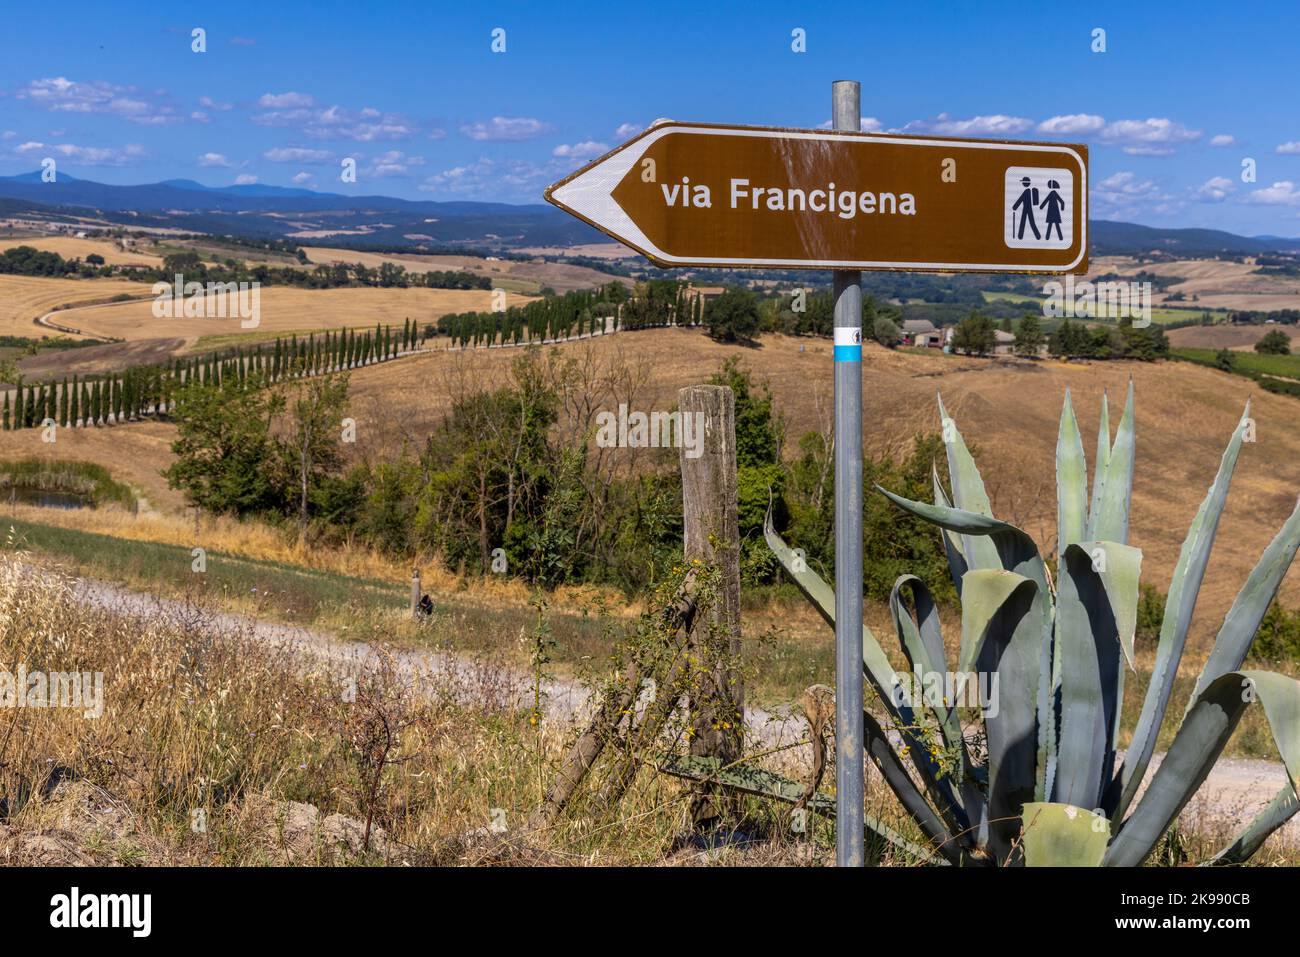 Paysage le long de la via Francigena avec route de Mud, champs, arbres et vignoble. Panneau indiquant la direction de Monteroni d'Arbia, route de la via francigen Banque D'Images